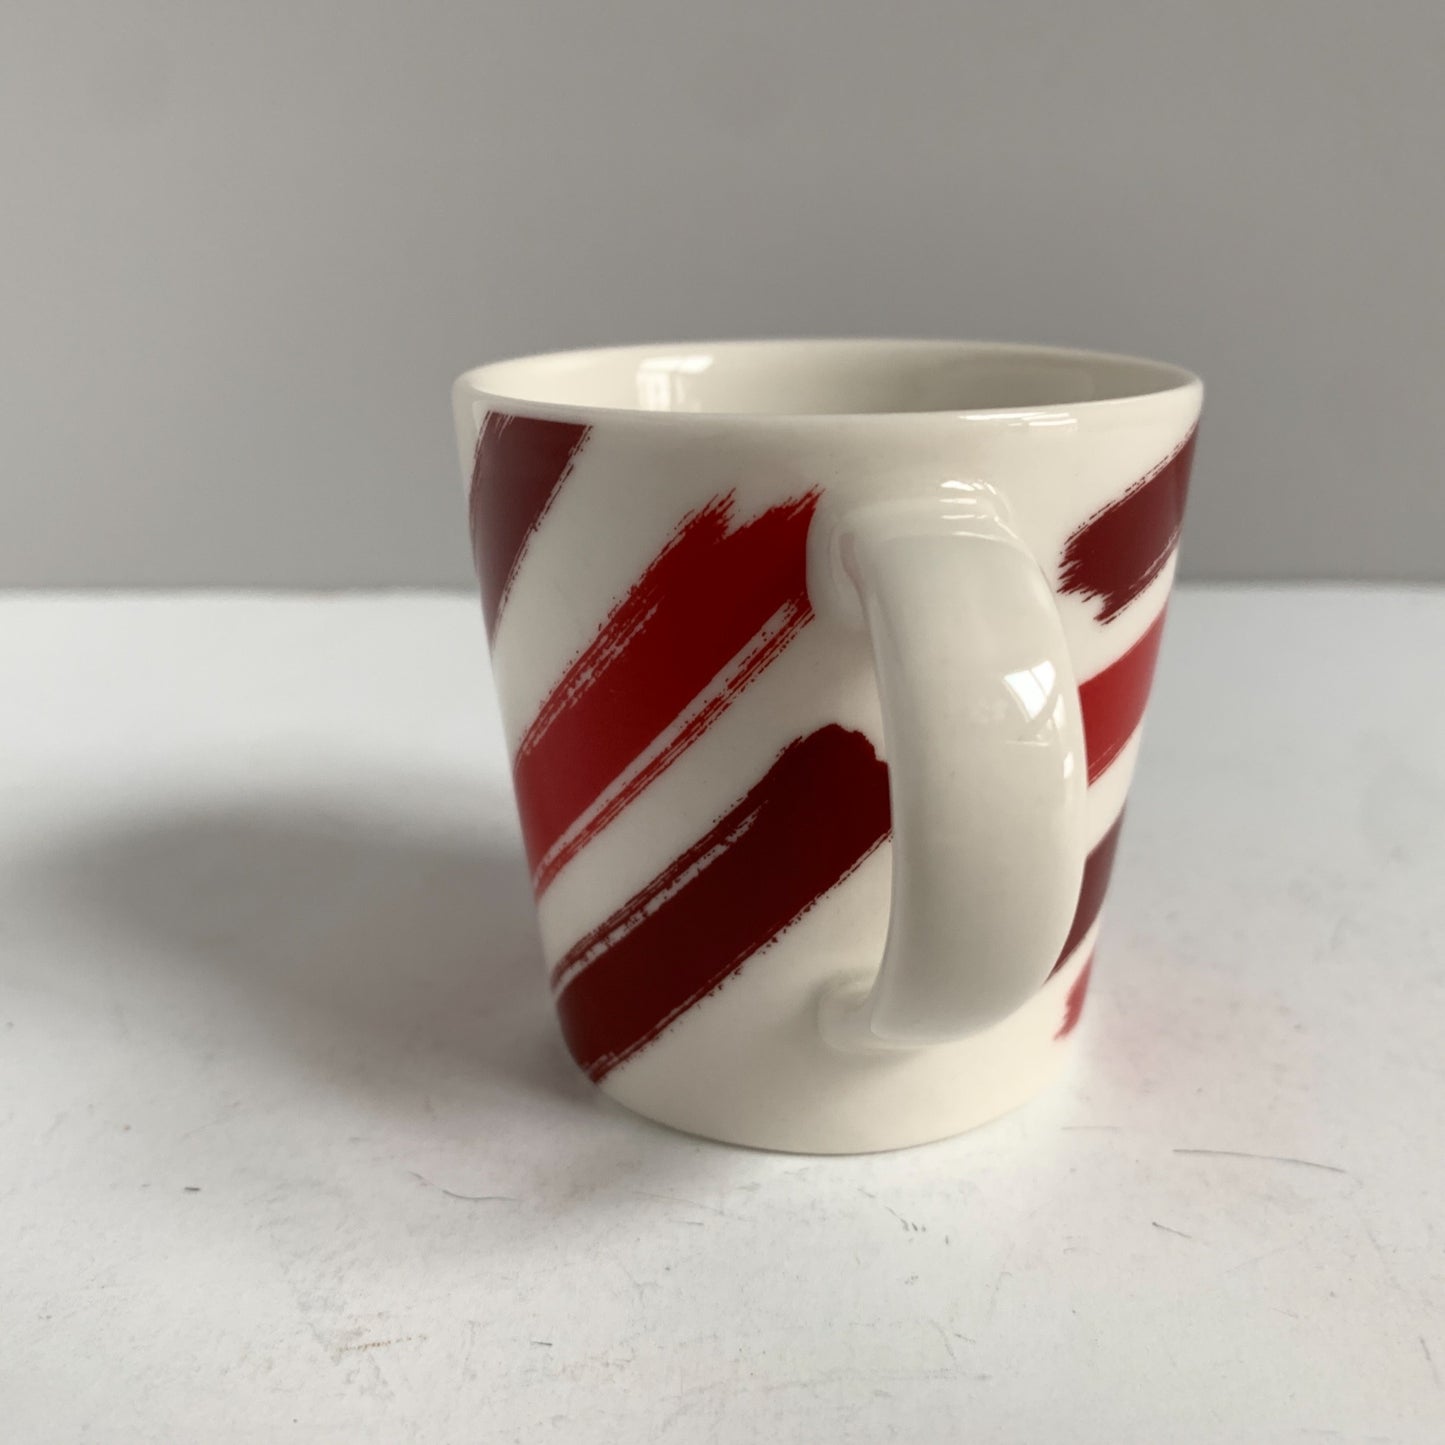 Starbucks 2014 3 oz. Espresso Mug Red Stripe